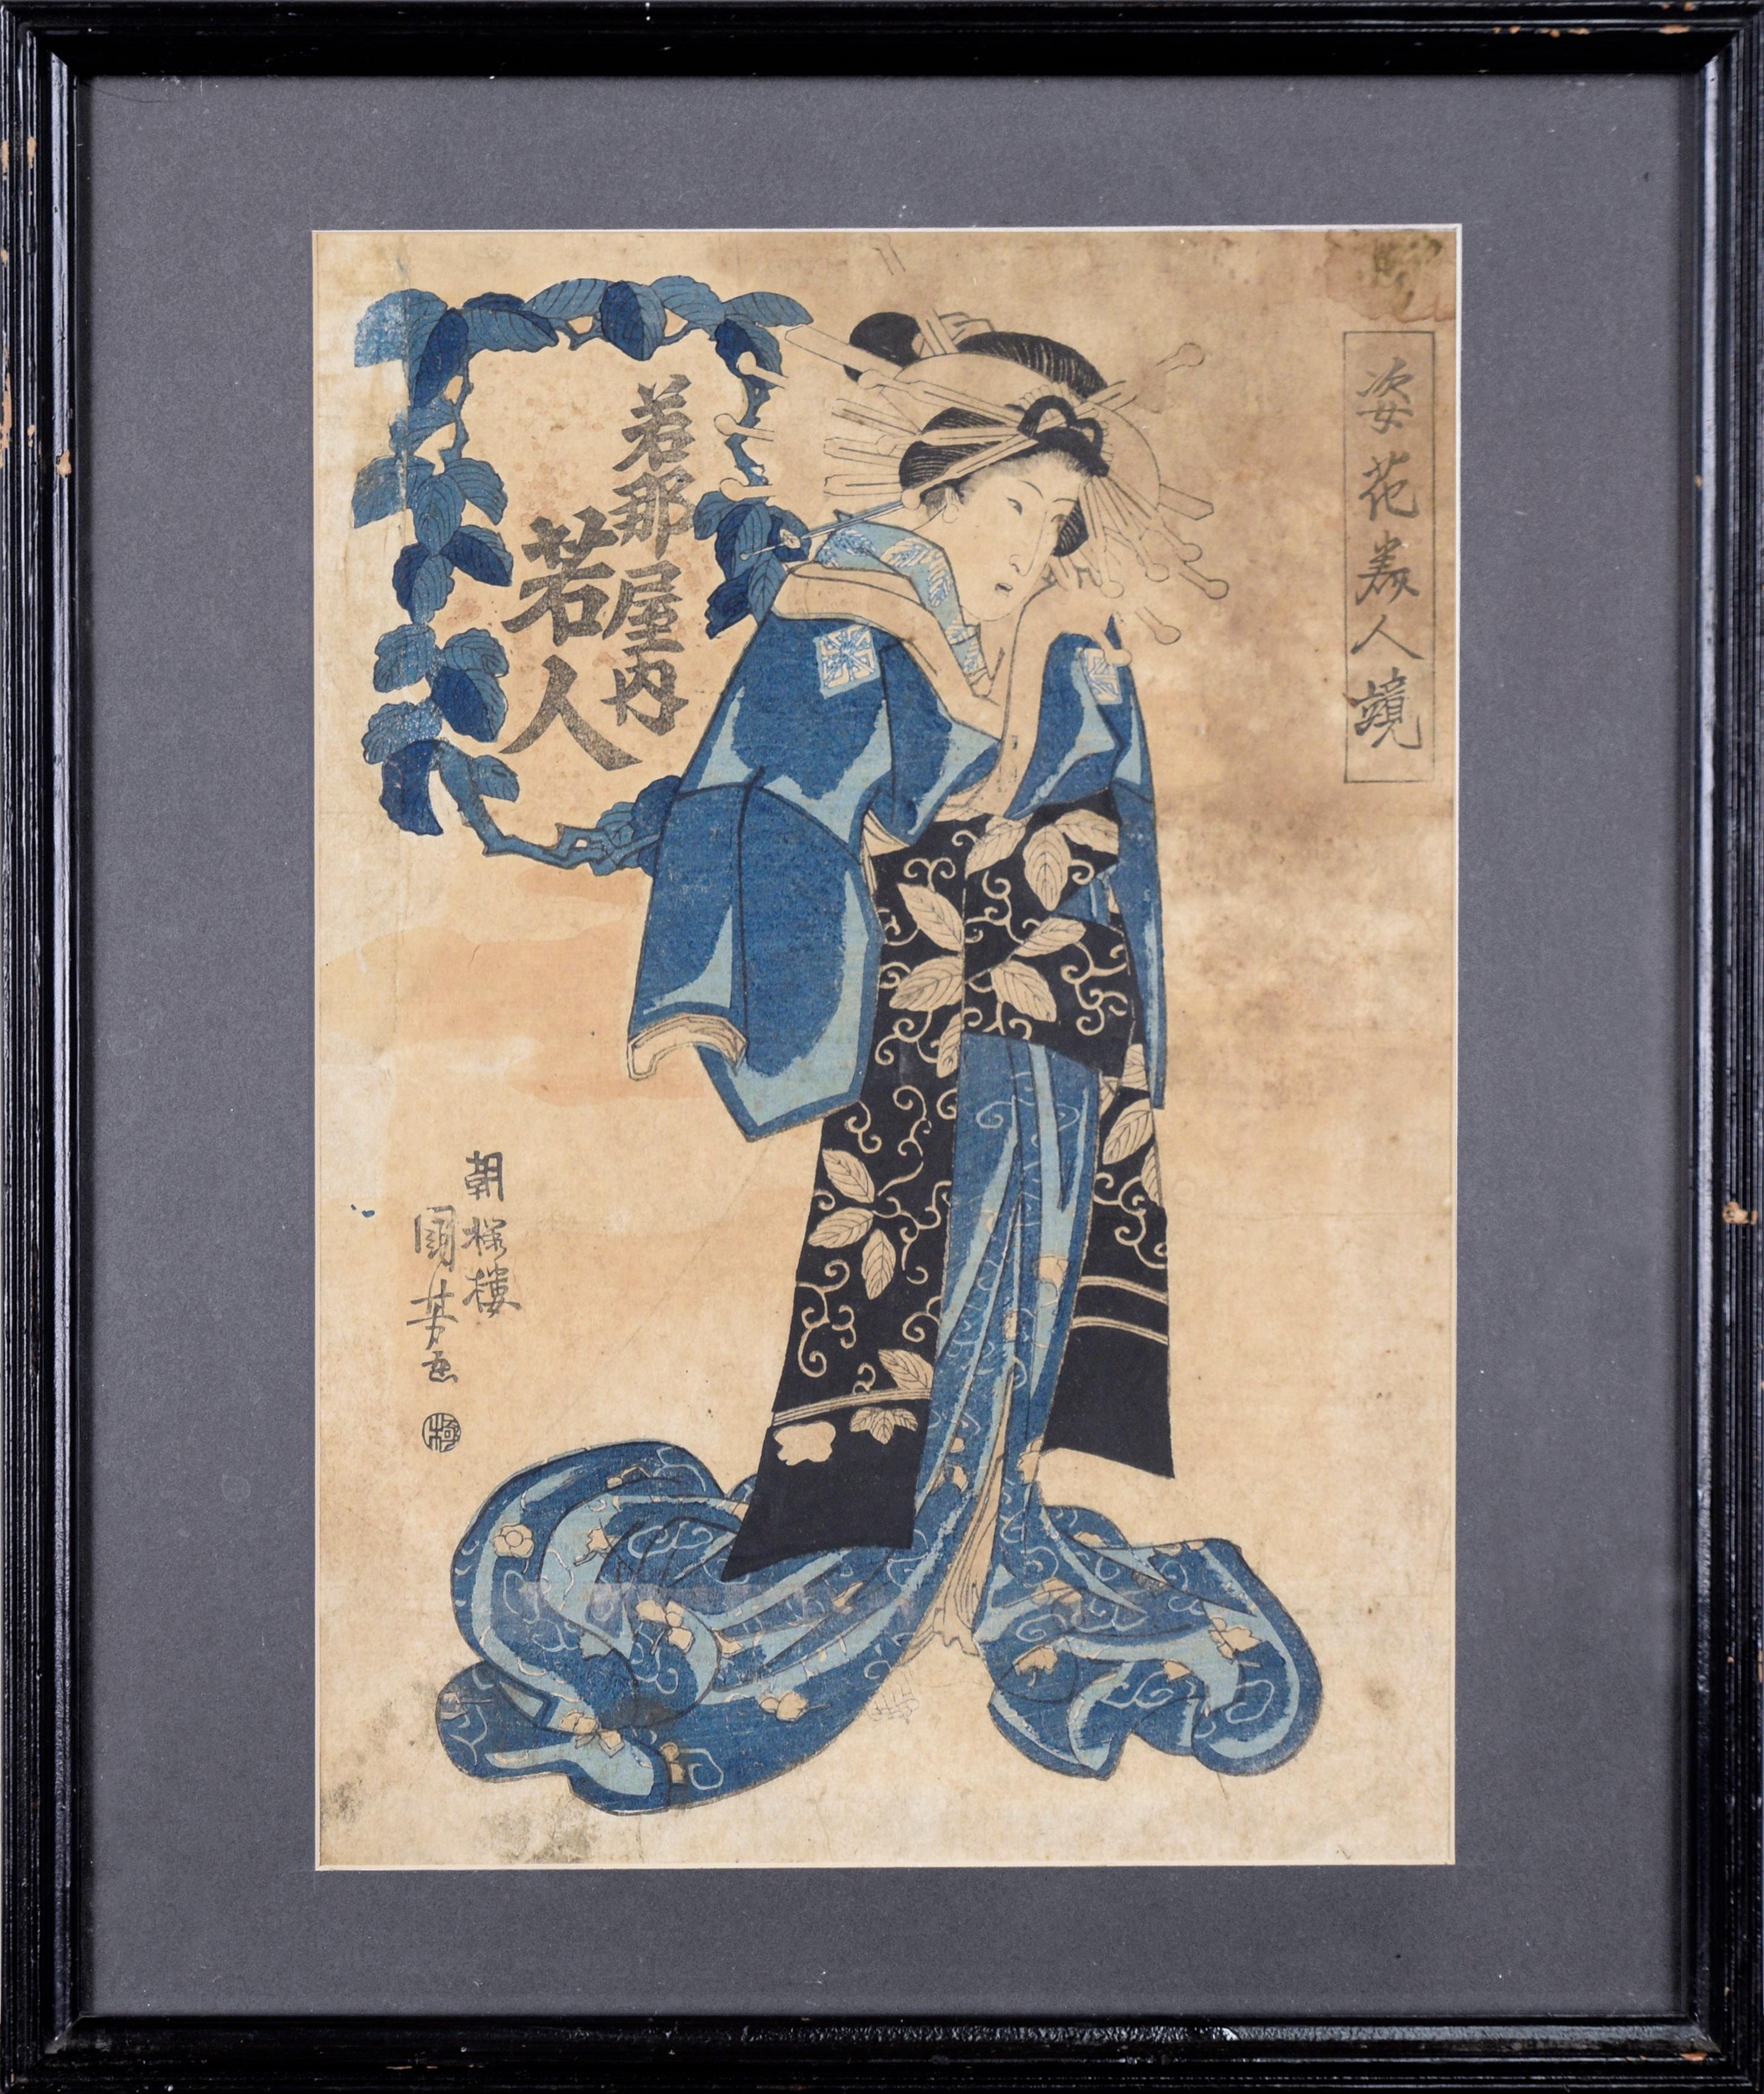 Les beautés en miroir dans les formes des fleurs - Utagawa Kuniyoshi, bloc de bois japonais

Une beauté japonaise habillée et posée comme des fleurs par Utagawa Kumiyoshi (Japon, 1797 - 1861 ).
Une deuxième impression vers le milieu du 19e siècle de